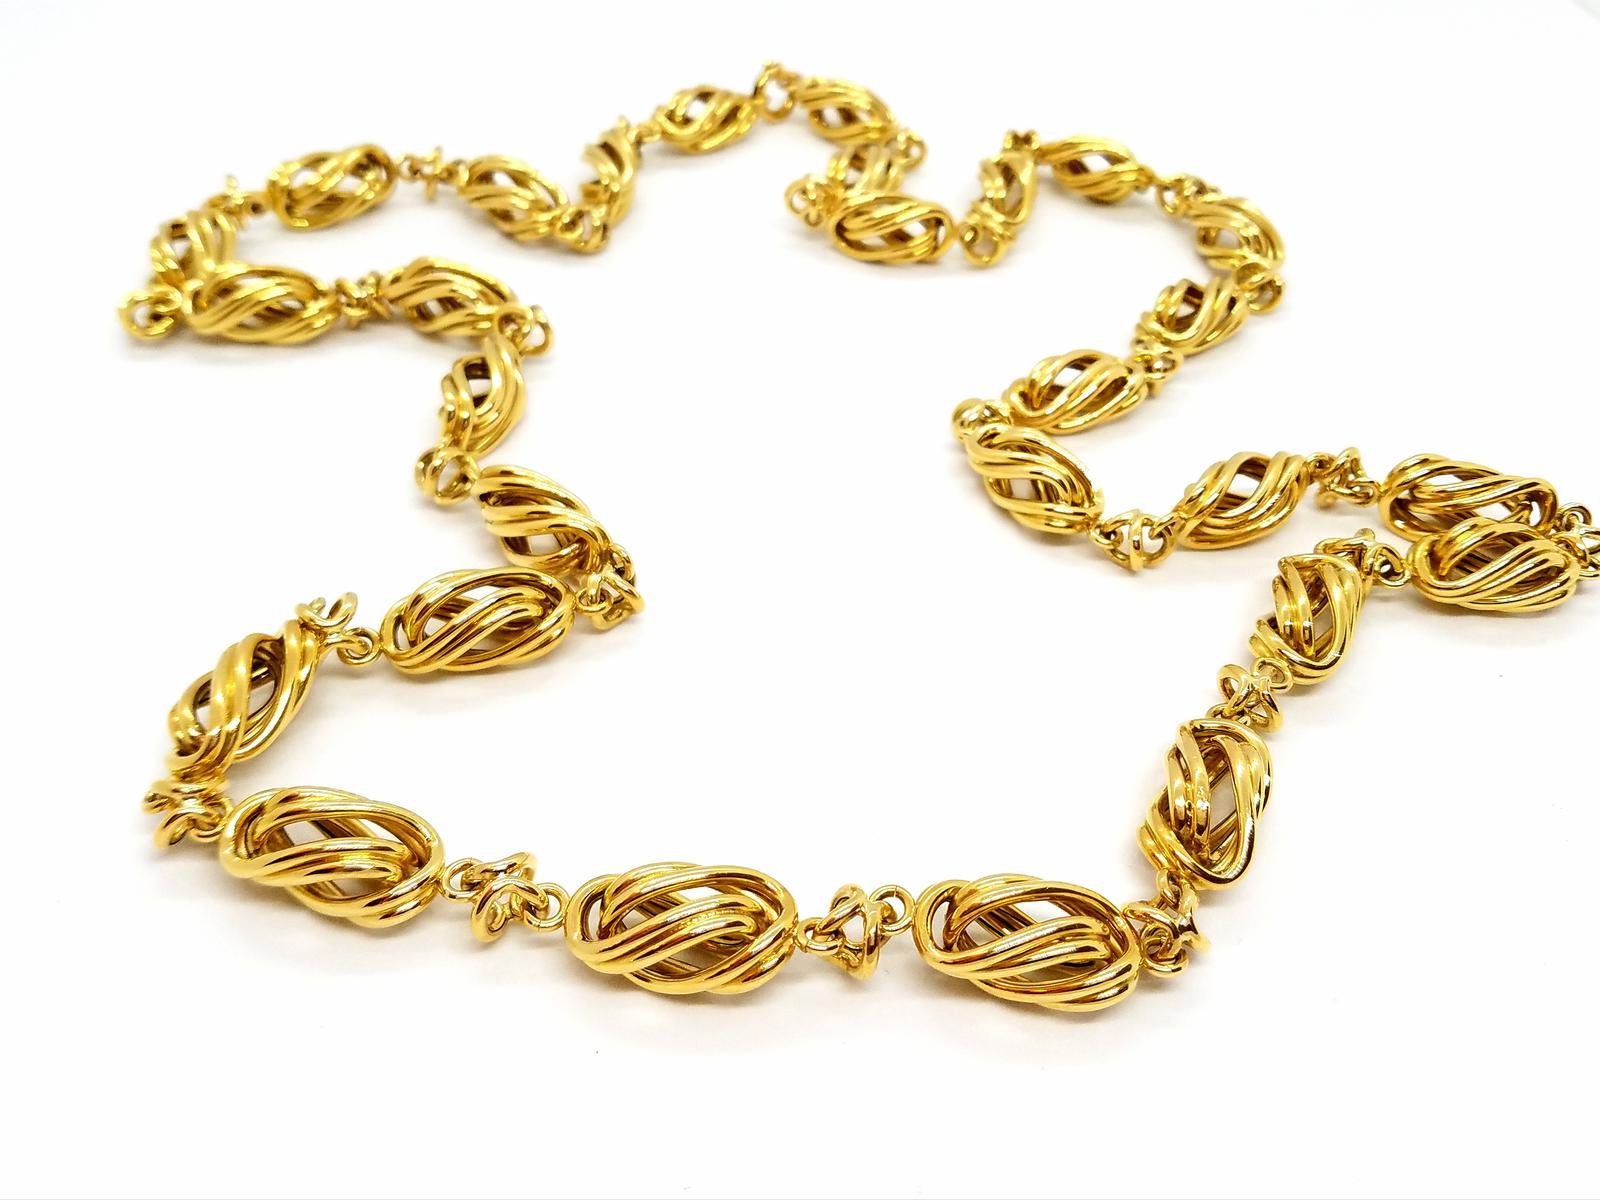 Schöne Goldkette gelb 750 mils (18 Karat). Jumper Länge 102 cm. Breite: 1,16 cm. kann über eine oder zwei Windungen getragen werden. Gesamtgewicht: 108,68 g. gestanzt. ausgezeichneter Zustand
